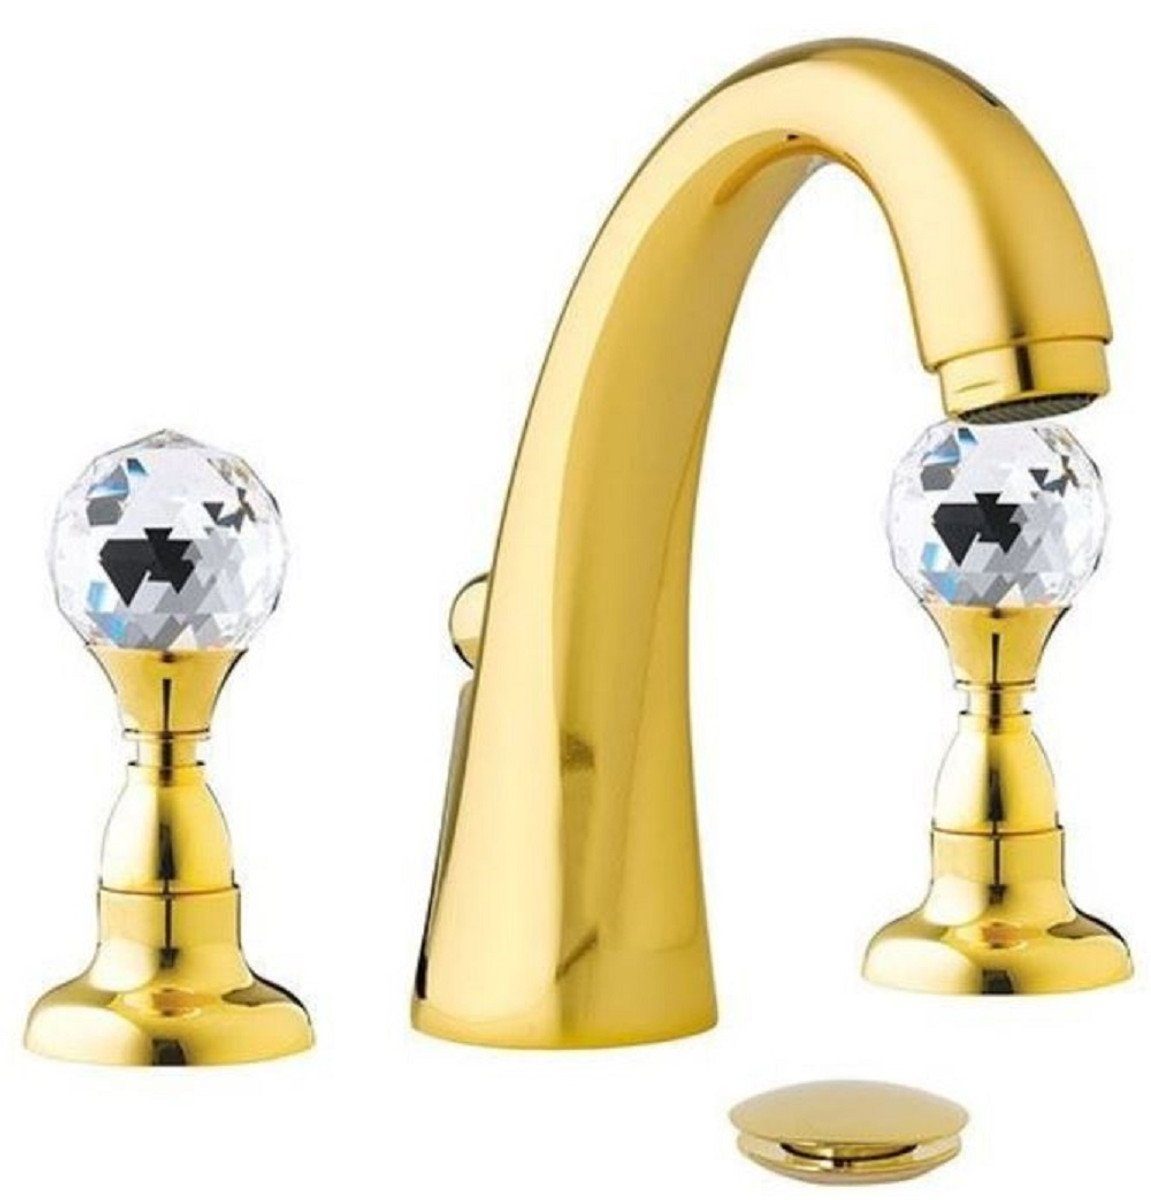 Casa Padrino Waschtischarmatur Luxus Waschtisch Armatur mit Swarovski Kristallglas Gold H. 15 cm - Dreilochbatterie mit Ablaufgarnitur - Luxus Bad Zubehör - Made in Italy